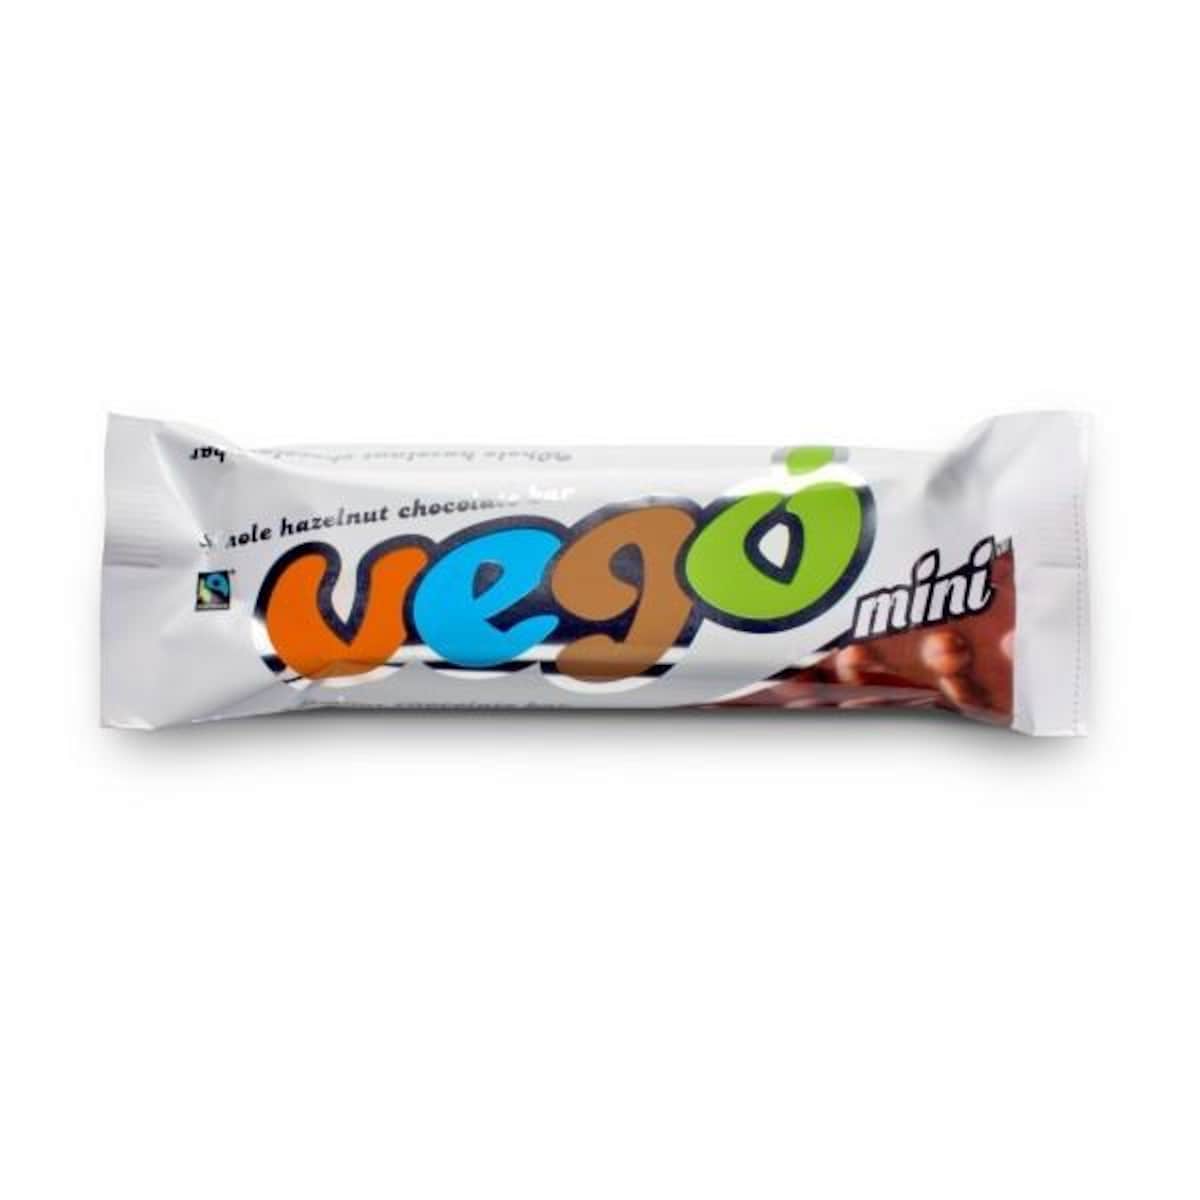 Vego Whole Hazelnut Chocolate Bar 65G